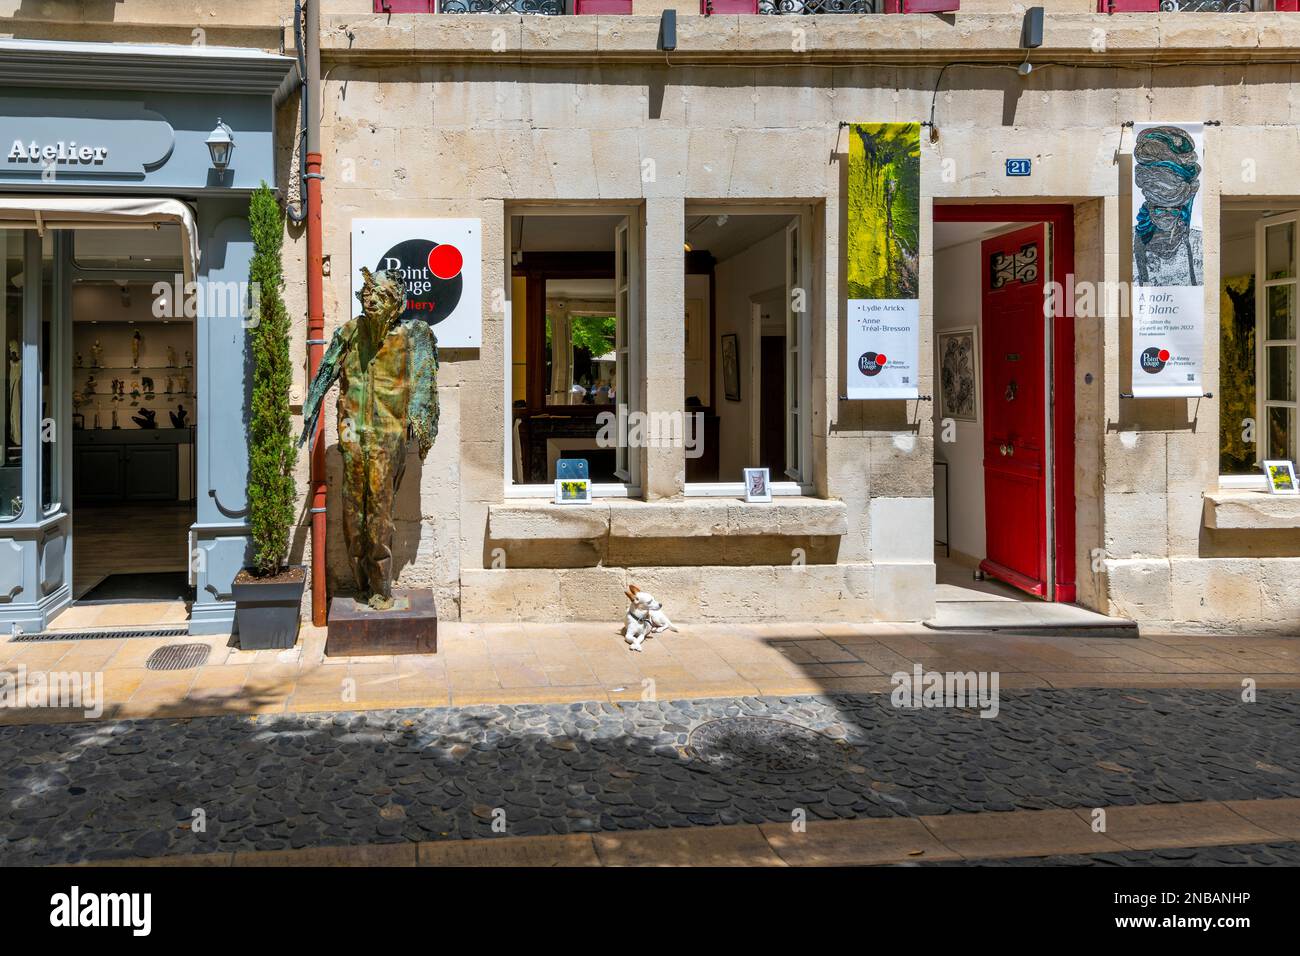 Un piccolo cane Chihuahua siede al sole fuori di un negozio di boutique d'arte nella città vecchia medievale di Saint-Remy-de-Provence, Francia. Foto Stock